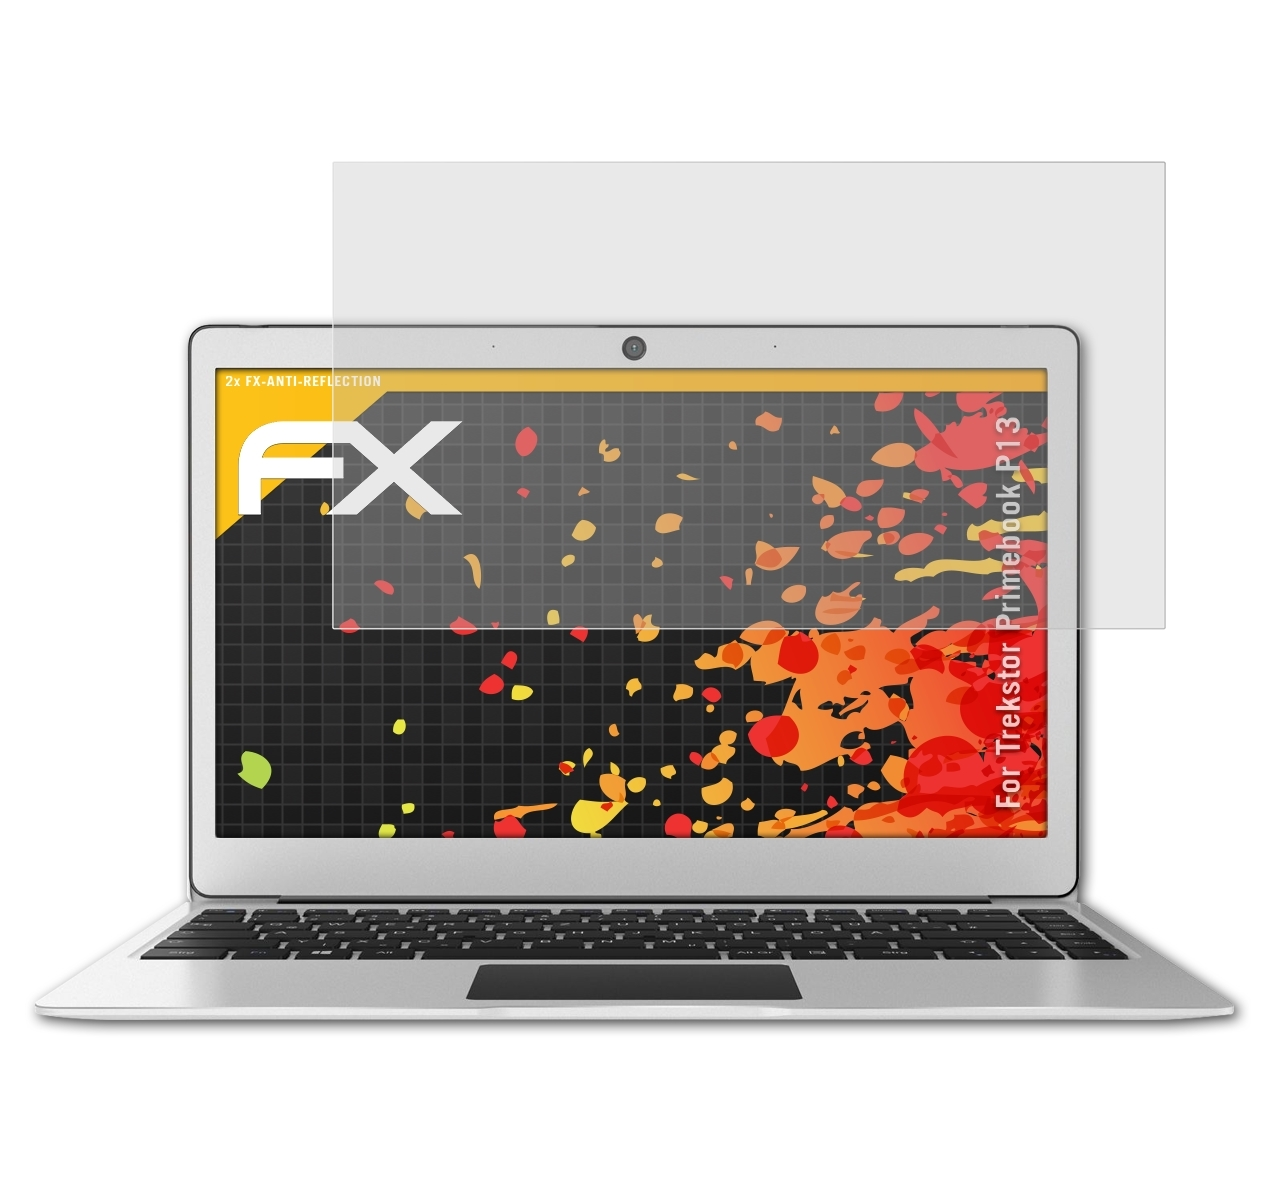 ATFOLIX 2x Trekstor Displayschutz(für Primebook FX-Antireflex P13)